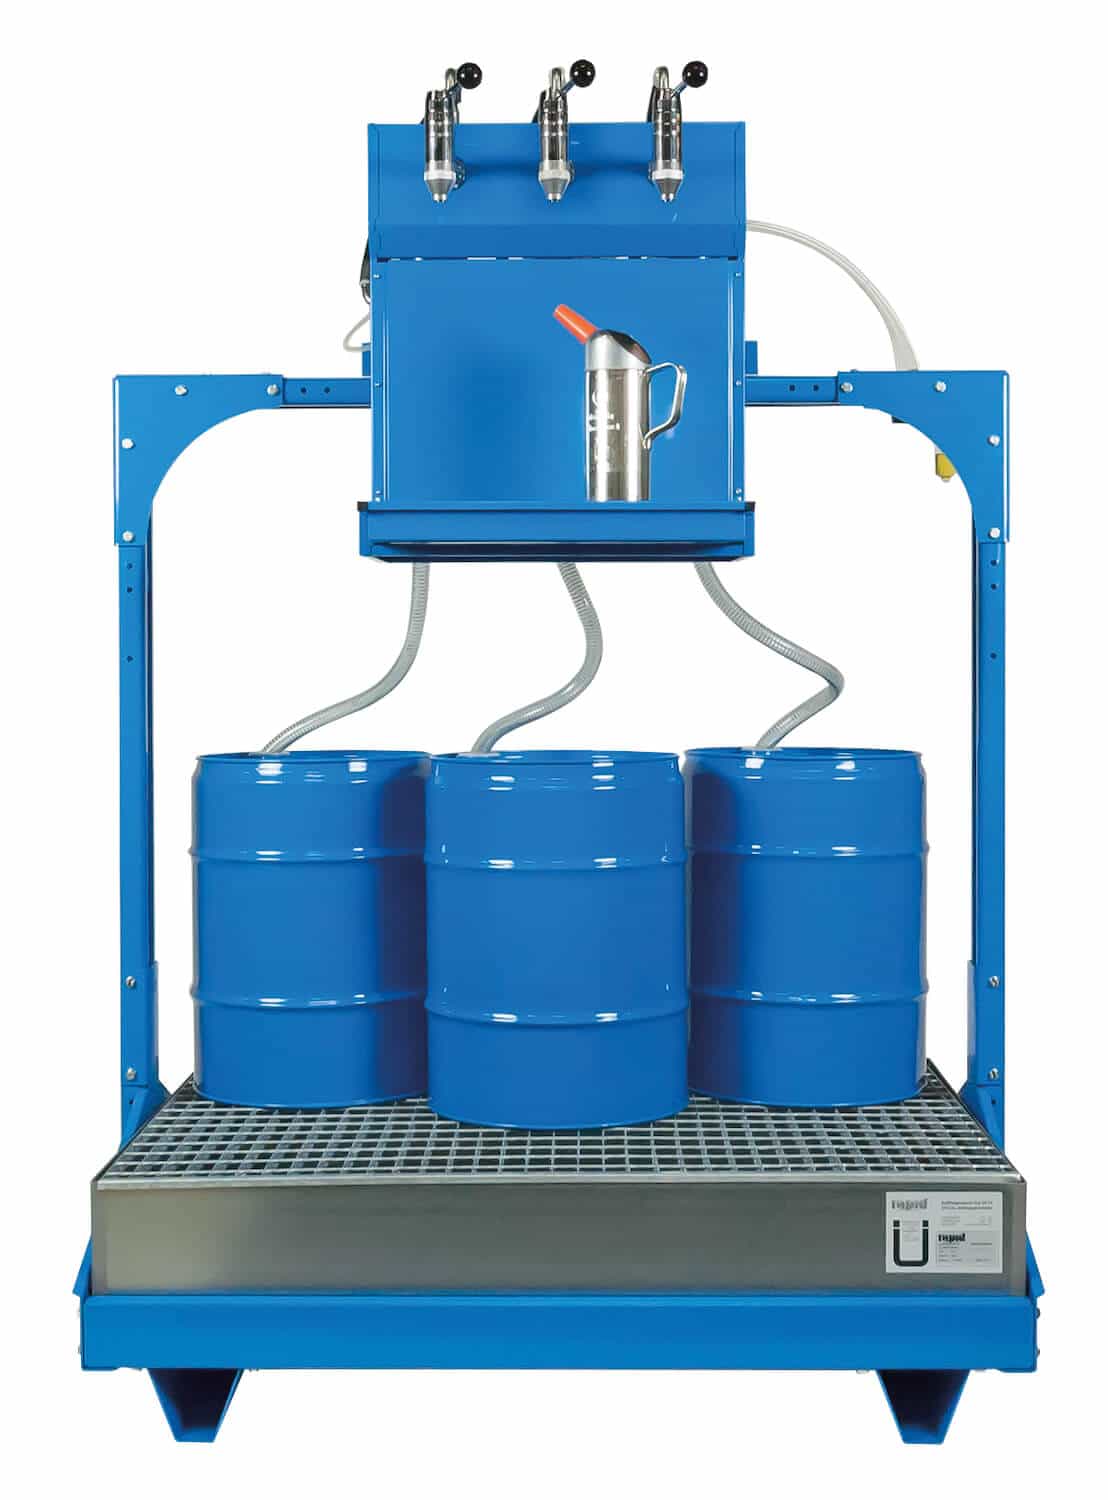 Universell einsetzbares Ölabgabeset für 3x 60 Ltr.-Fässer, mit pneumatischen Pumpen